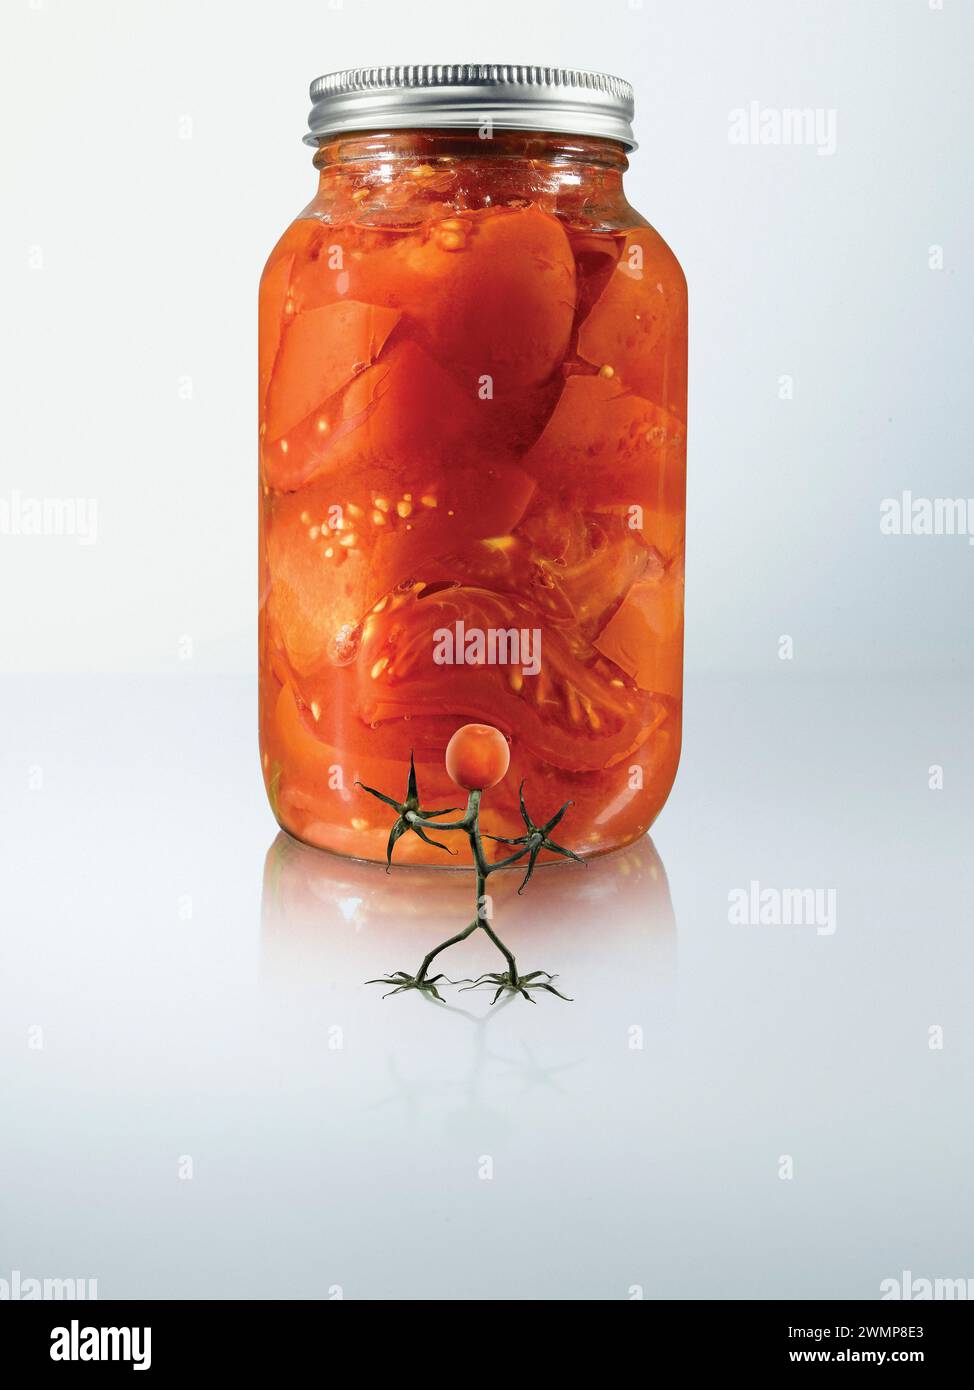 Tomate cherry de pie frente a un frasco de conservas de tomate sobre un fondo blanco; Studio Shot Foto de stock